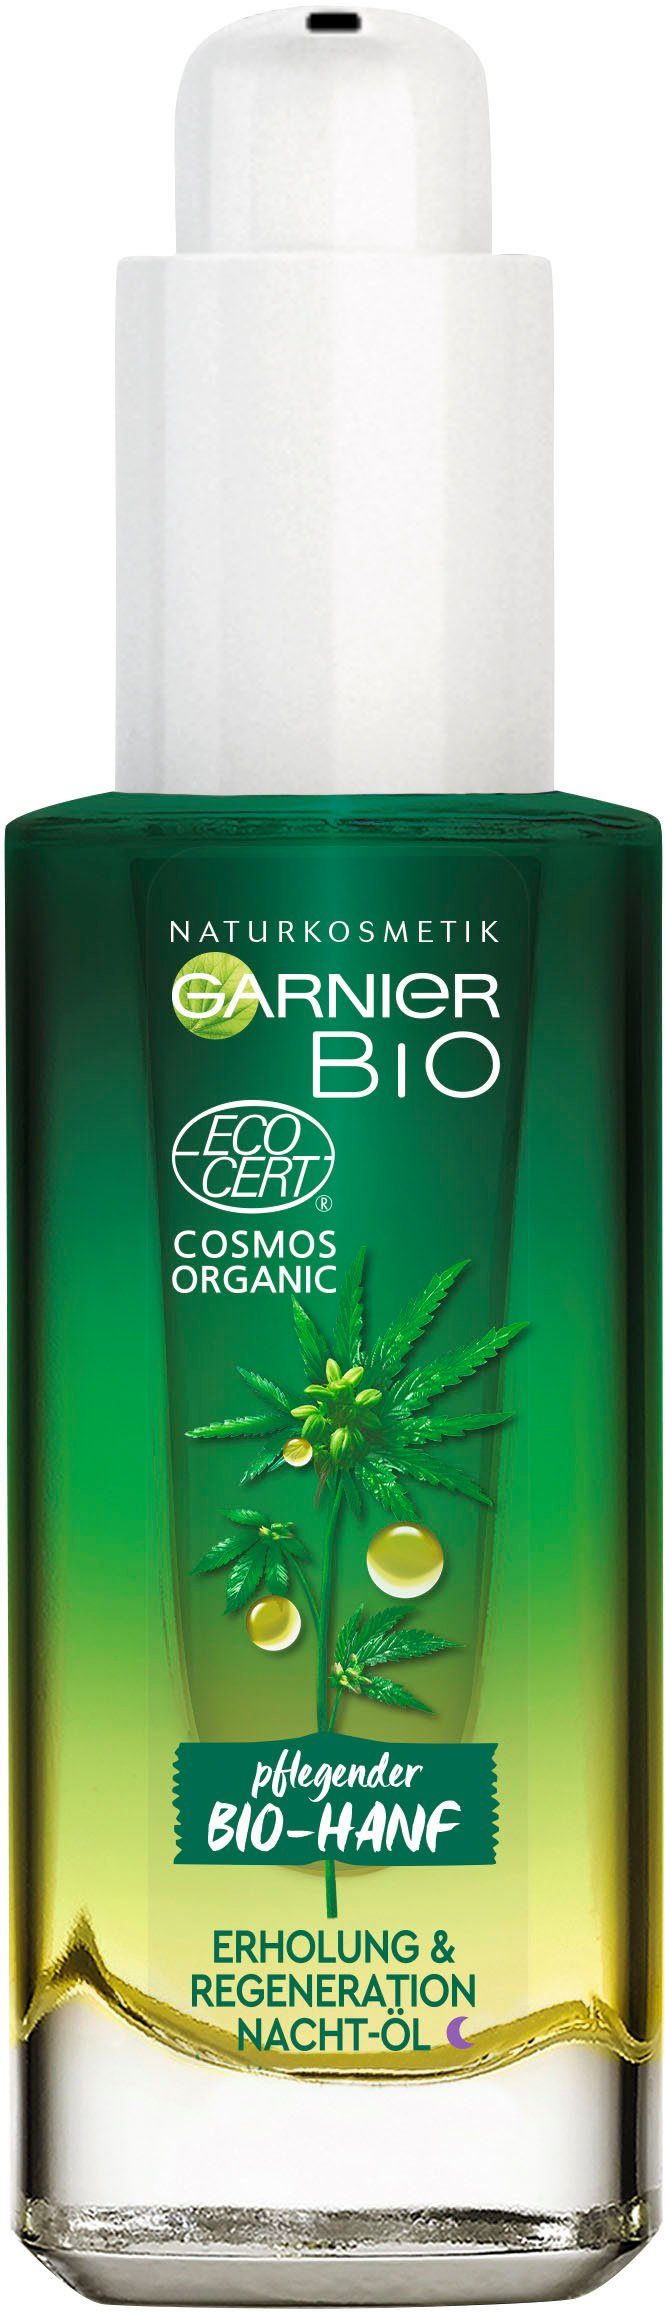 & Nacht-Öl, Naturkosmetik GARNIER Erholung Regeneration Gesichtsöl Bio-Hanf